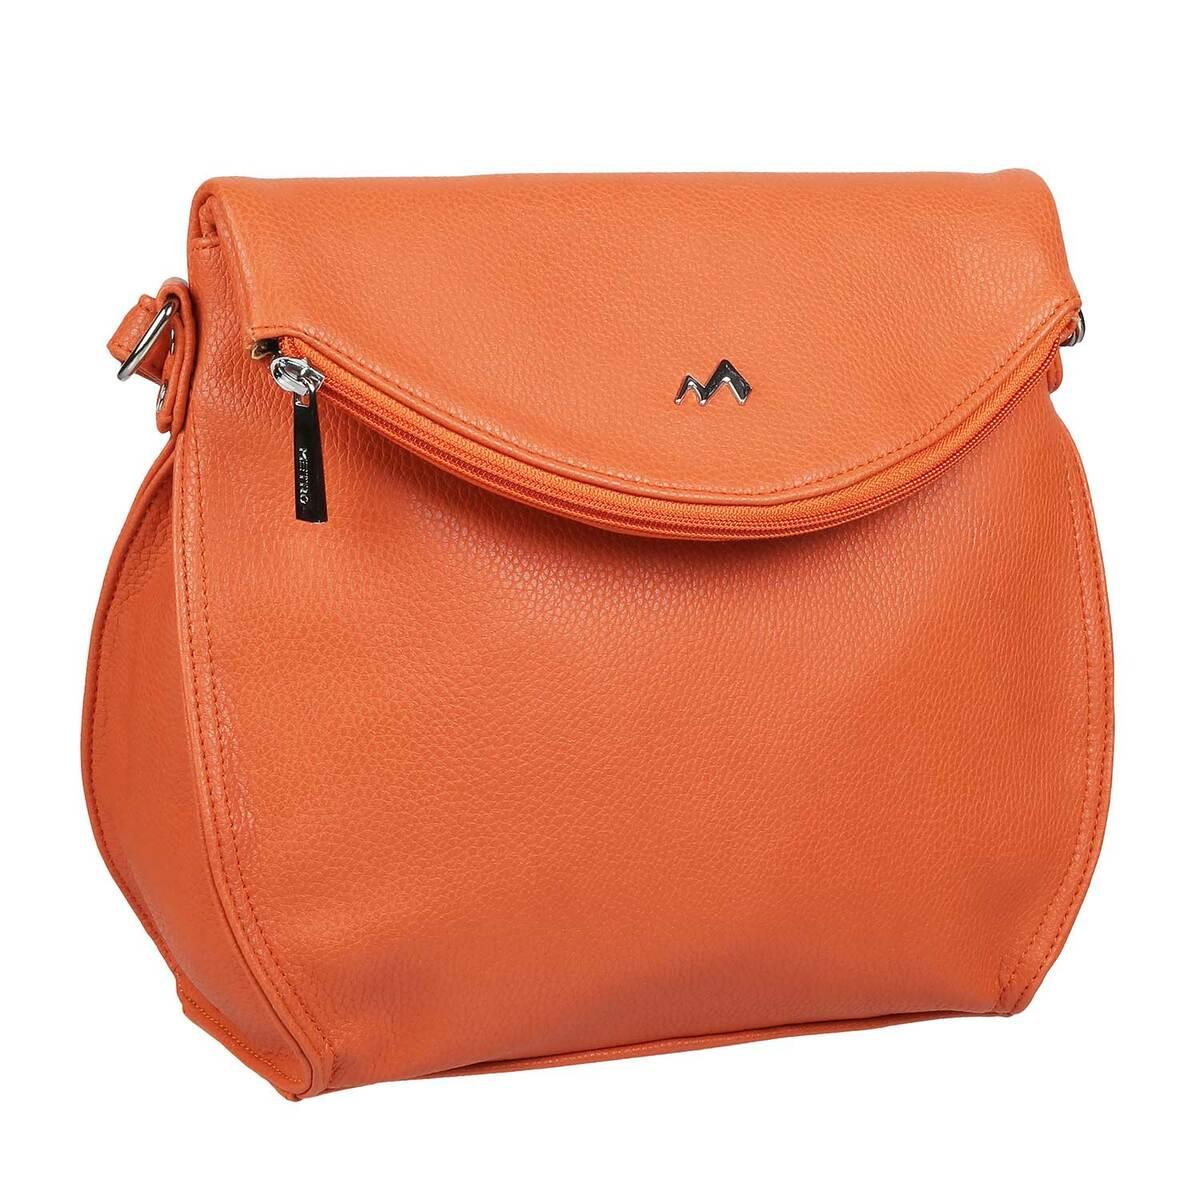 Buy SUKUTU Fruit Orange Shaped Girl Purses PU Leather Crossbody Bag for  women at Amazon.in